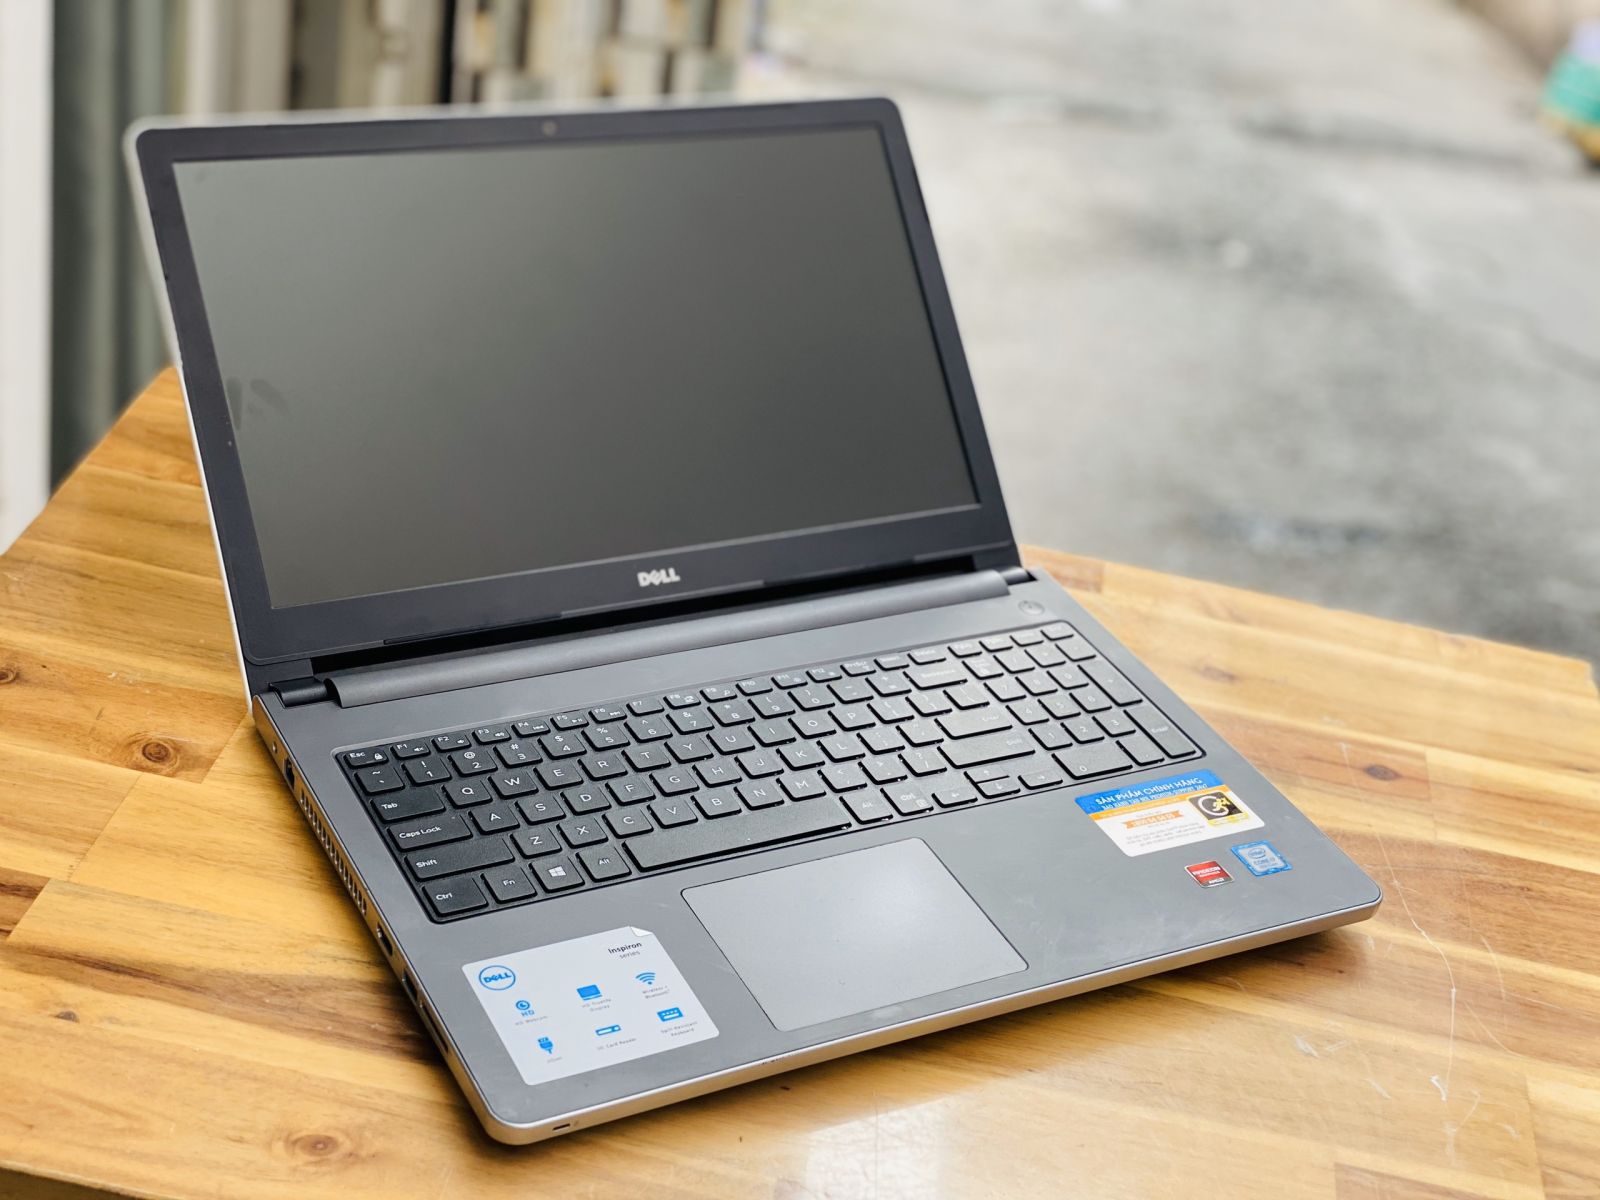 Laptop Dell Inspiron 5559, i7 6500U 8G SSD128+500G Vga rời 4G Đèn phím Đẹp zin 100% Giá rẻ1